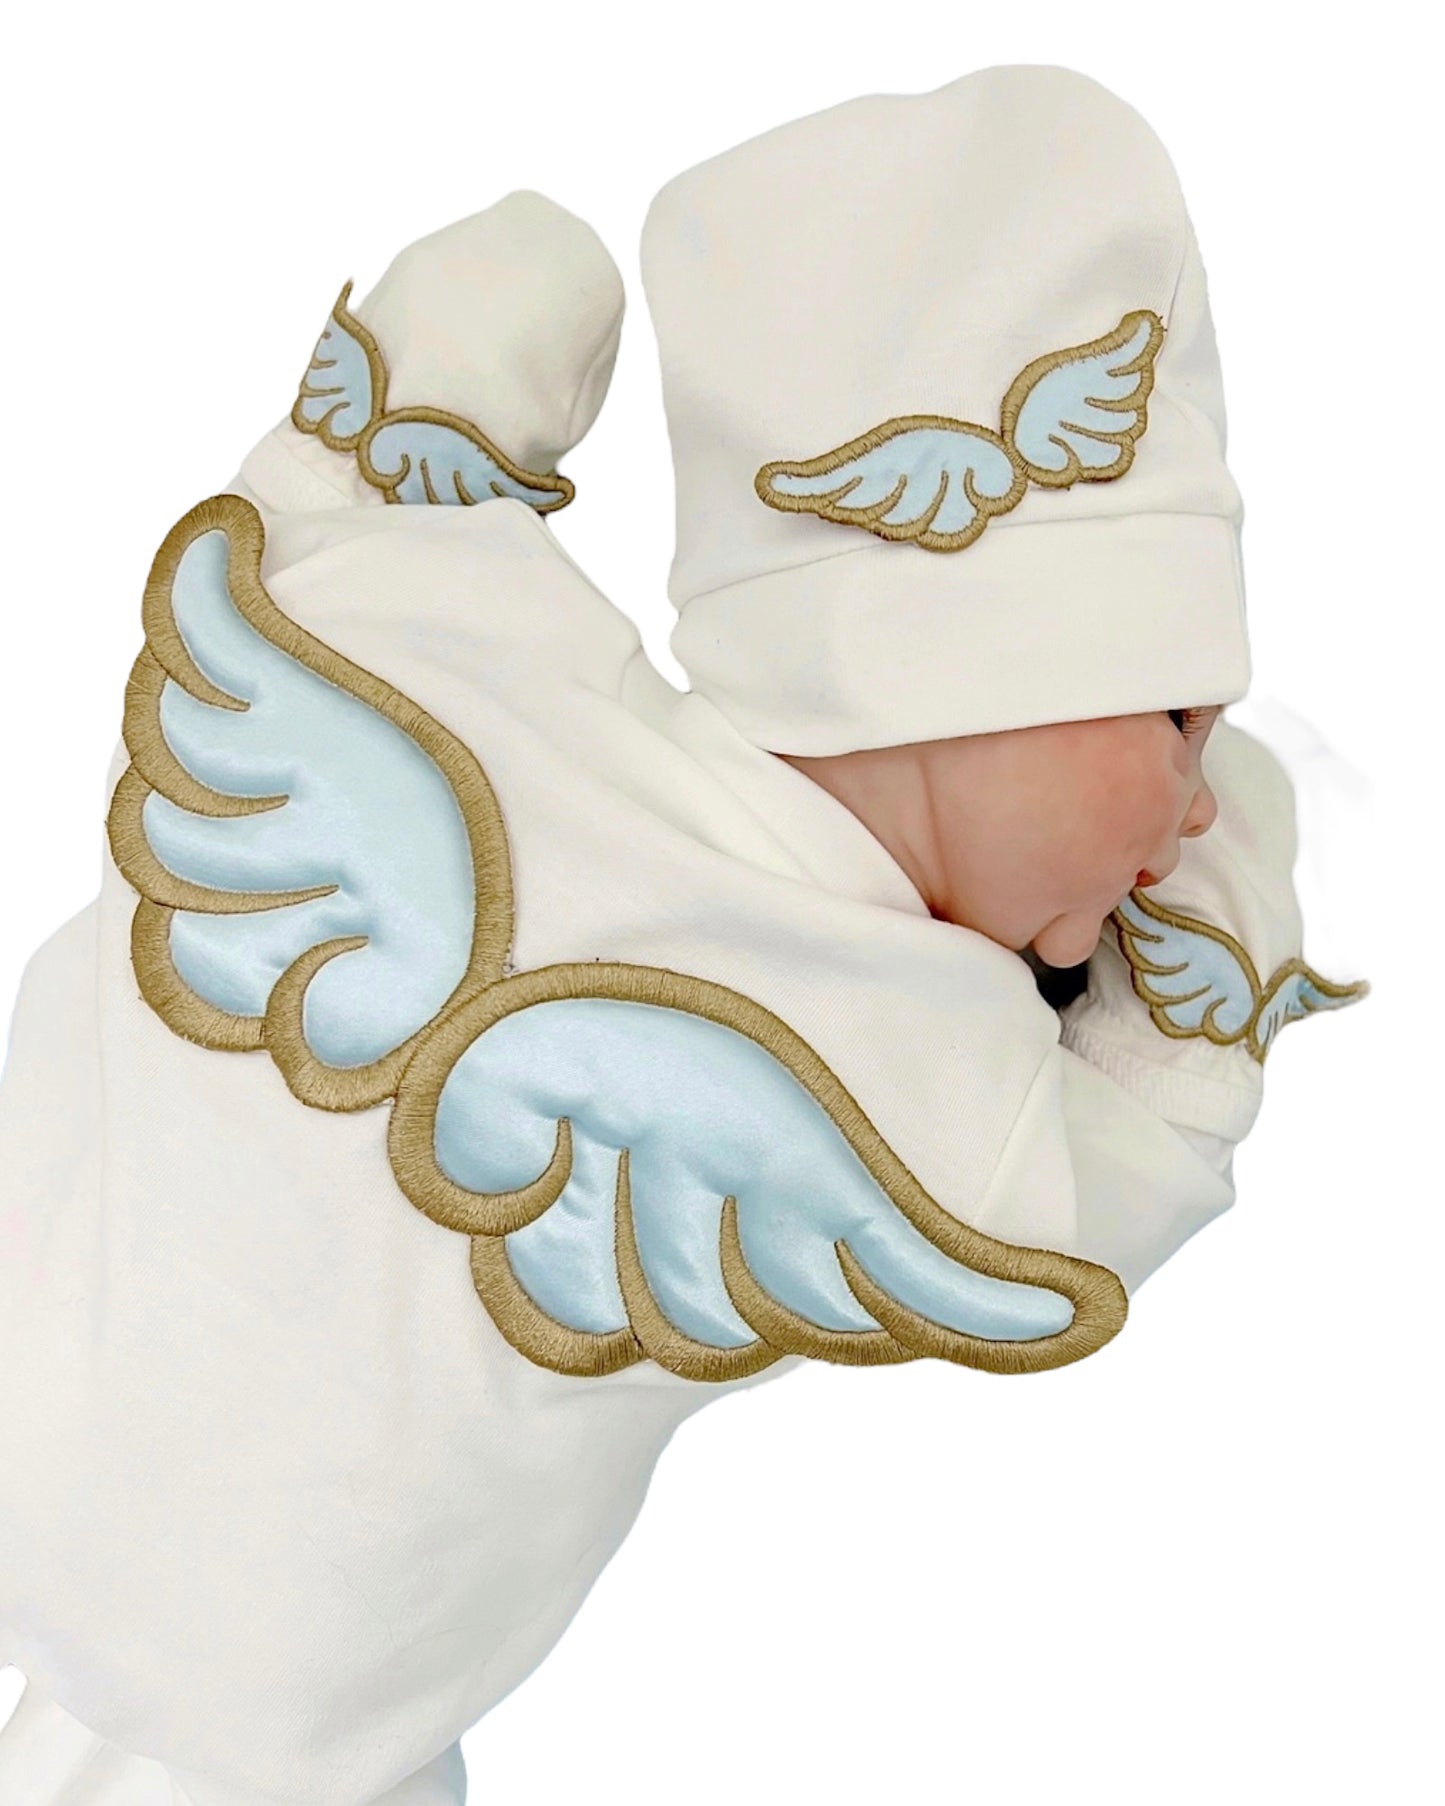 Engel Jungen Strampler Einteiler Taufanzug Babyshooting